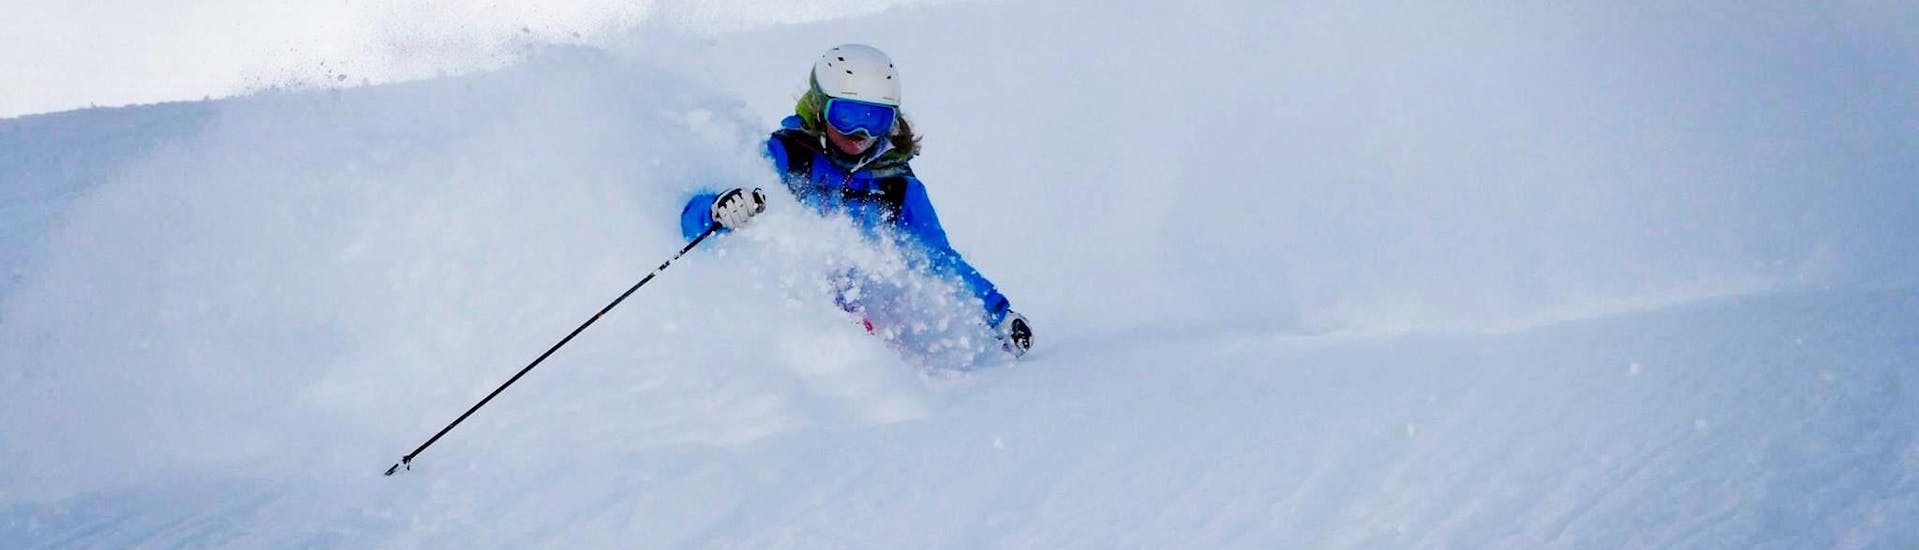 Un moniteur de ski descend avec brio une piste enneigée dans la station de ski de Sölden lors d'un cours particulier de freeride organisé par l'école de ski Ski- und Snowboardschule SNOWLINES.